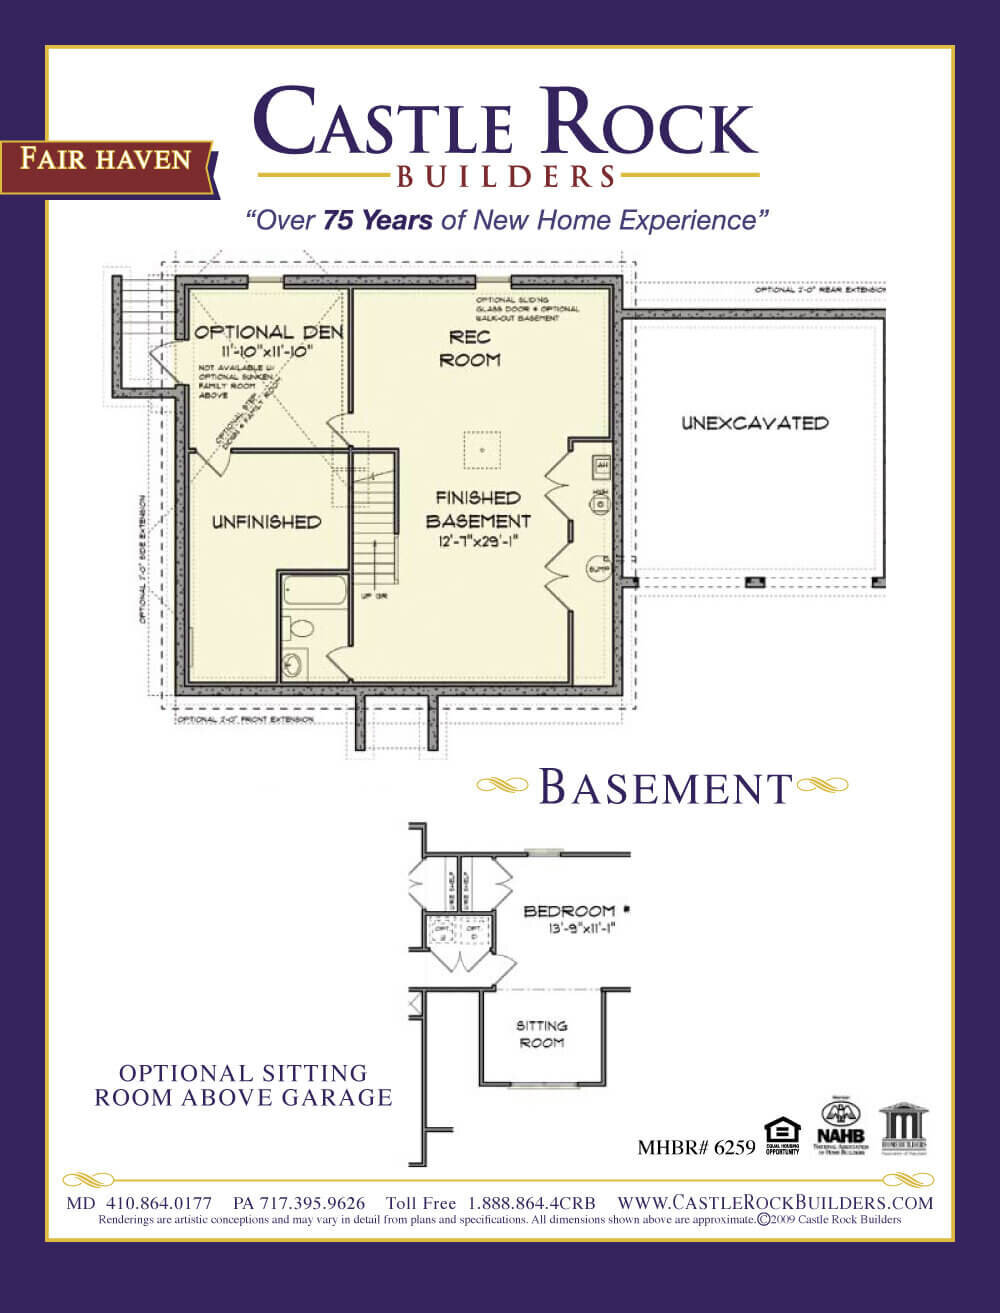 Fair Haven basement plan